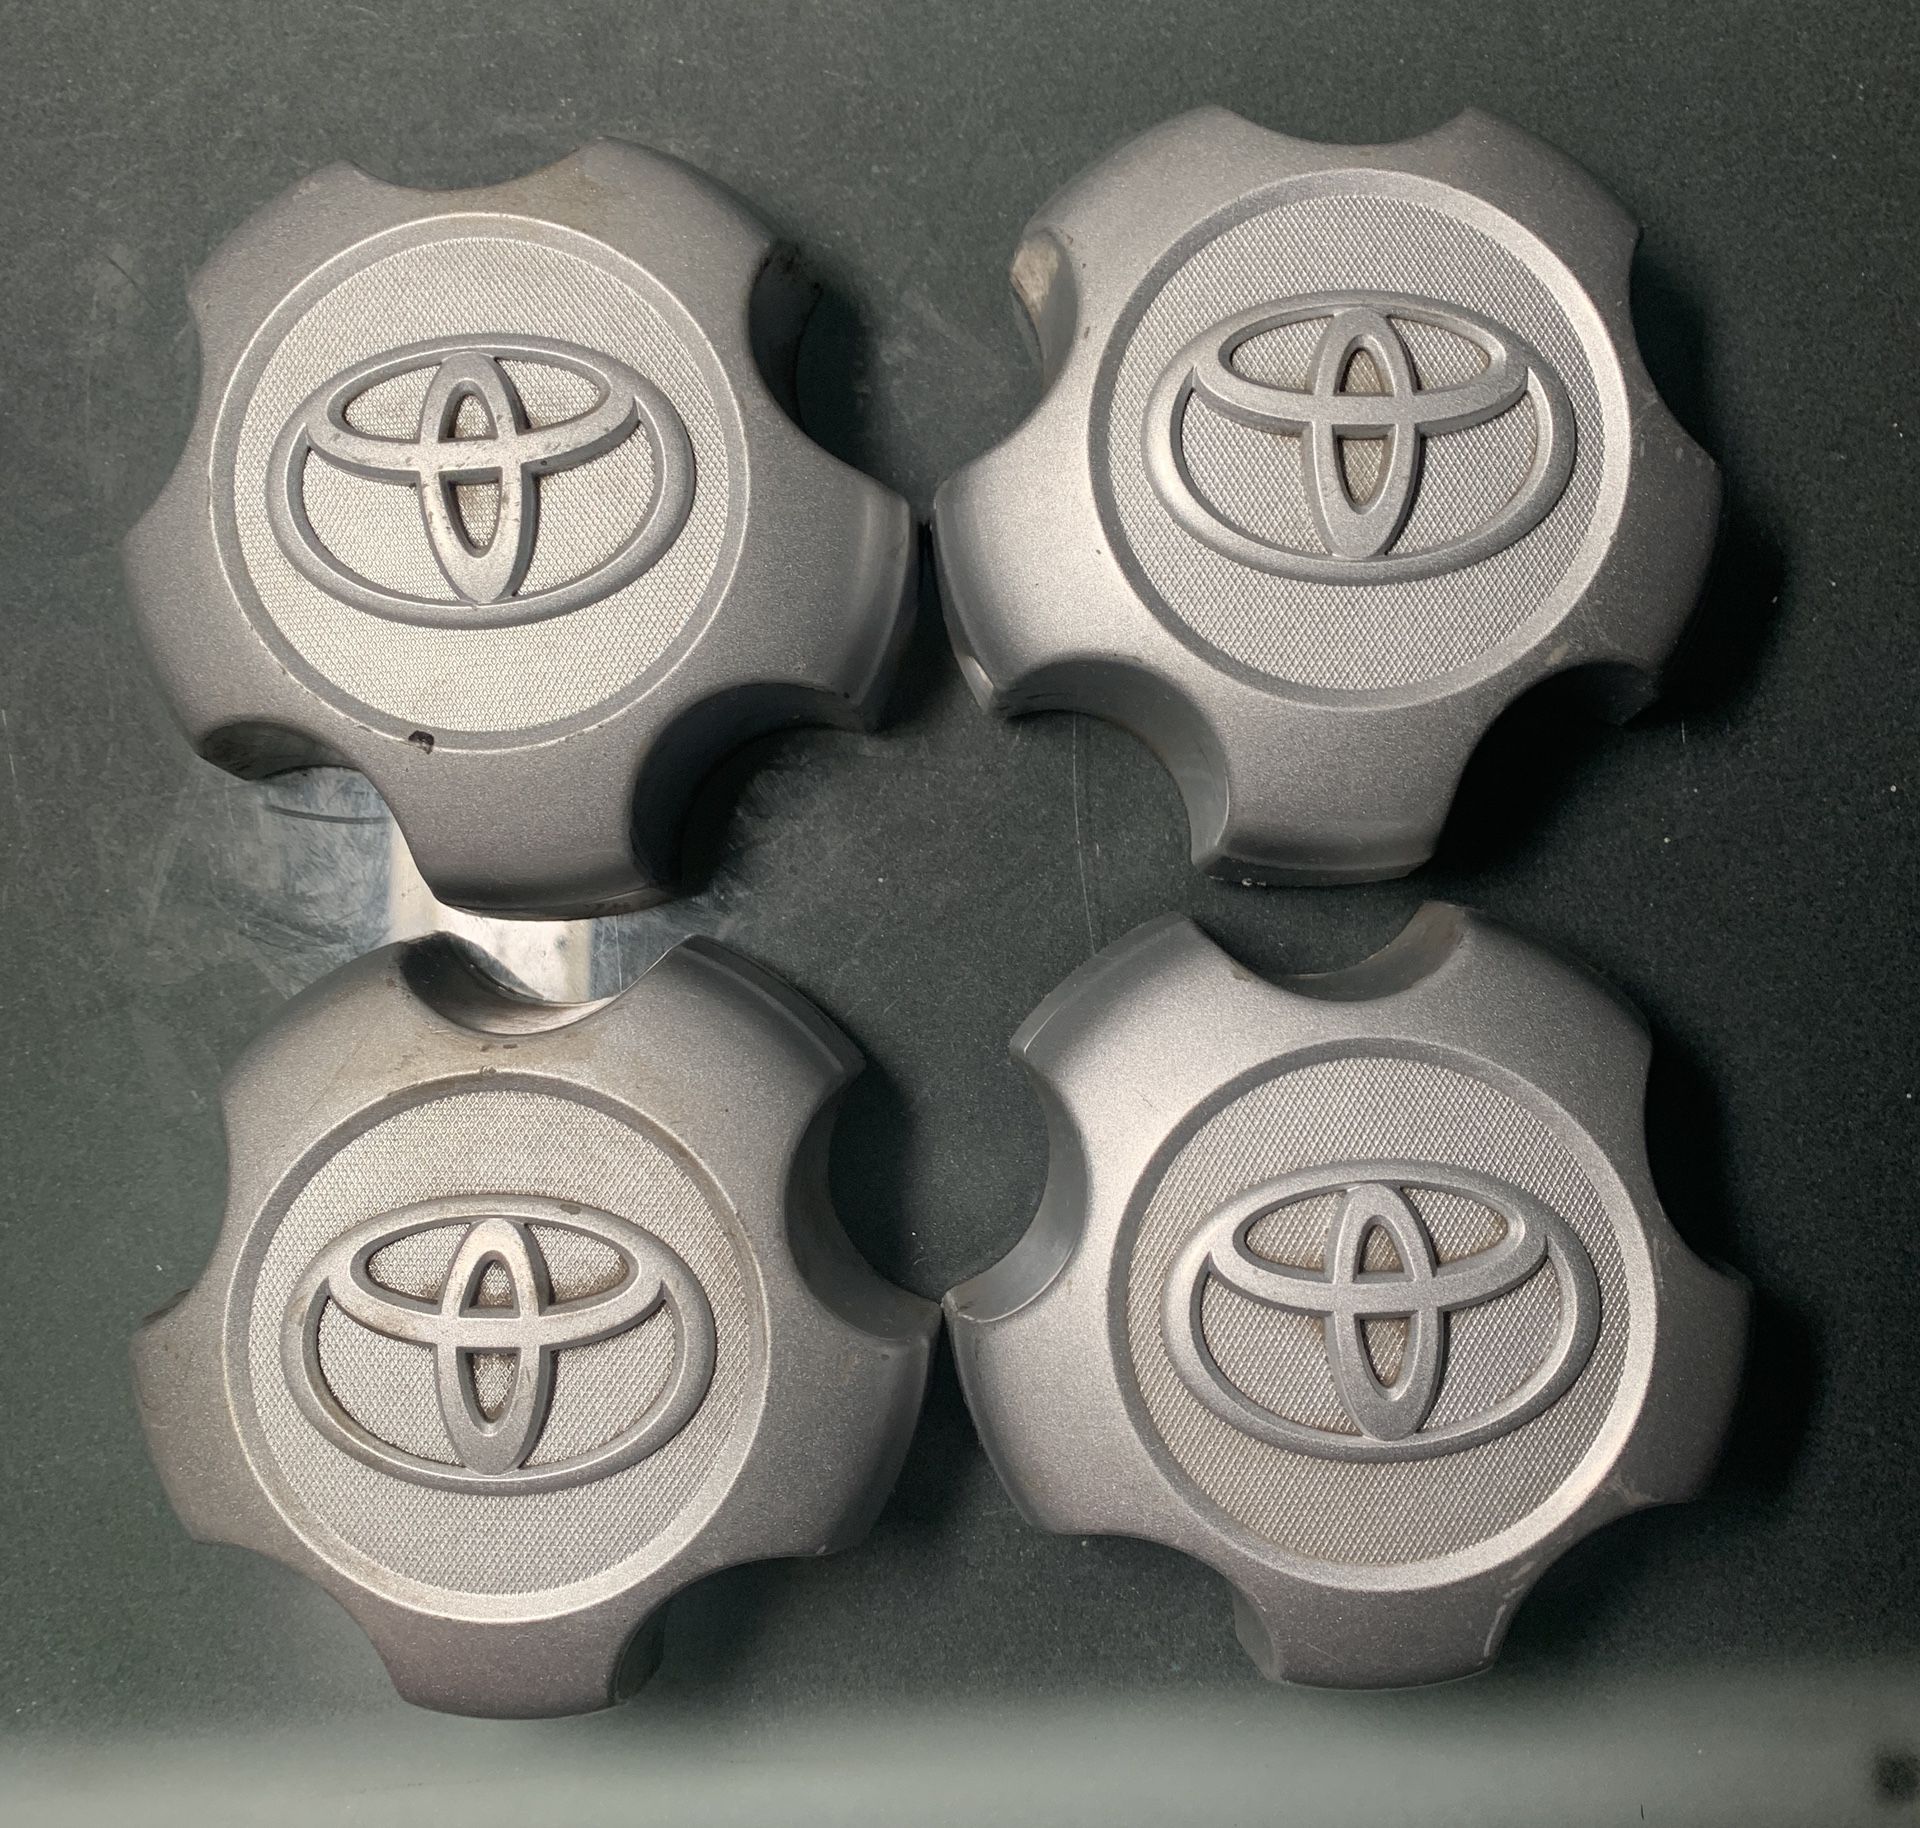 2006-2012 Toyota RAV4 center caps